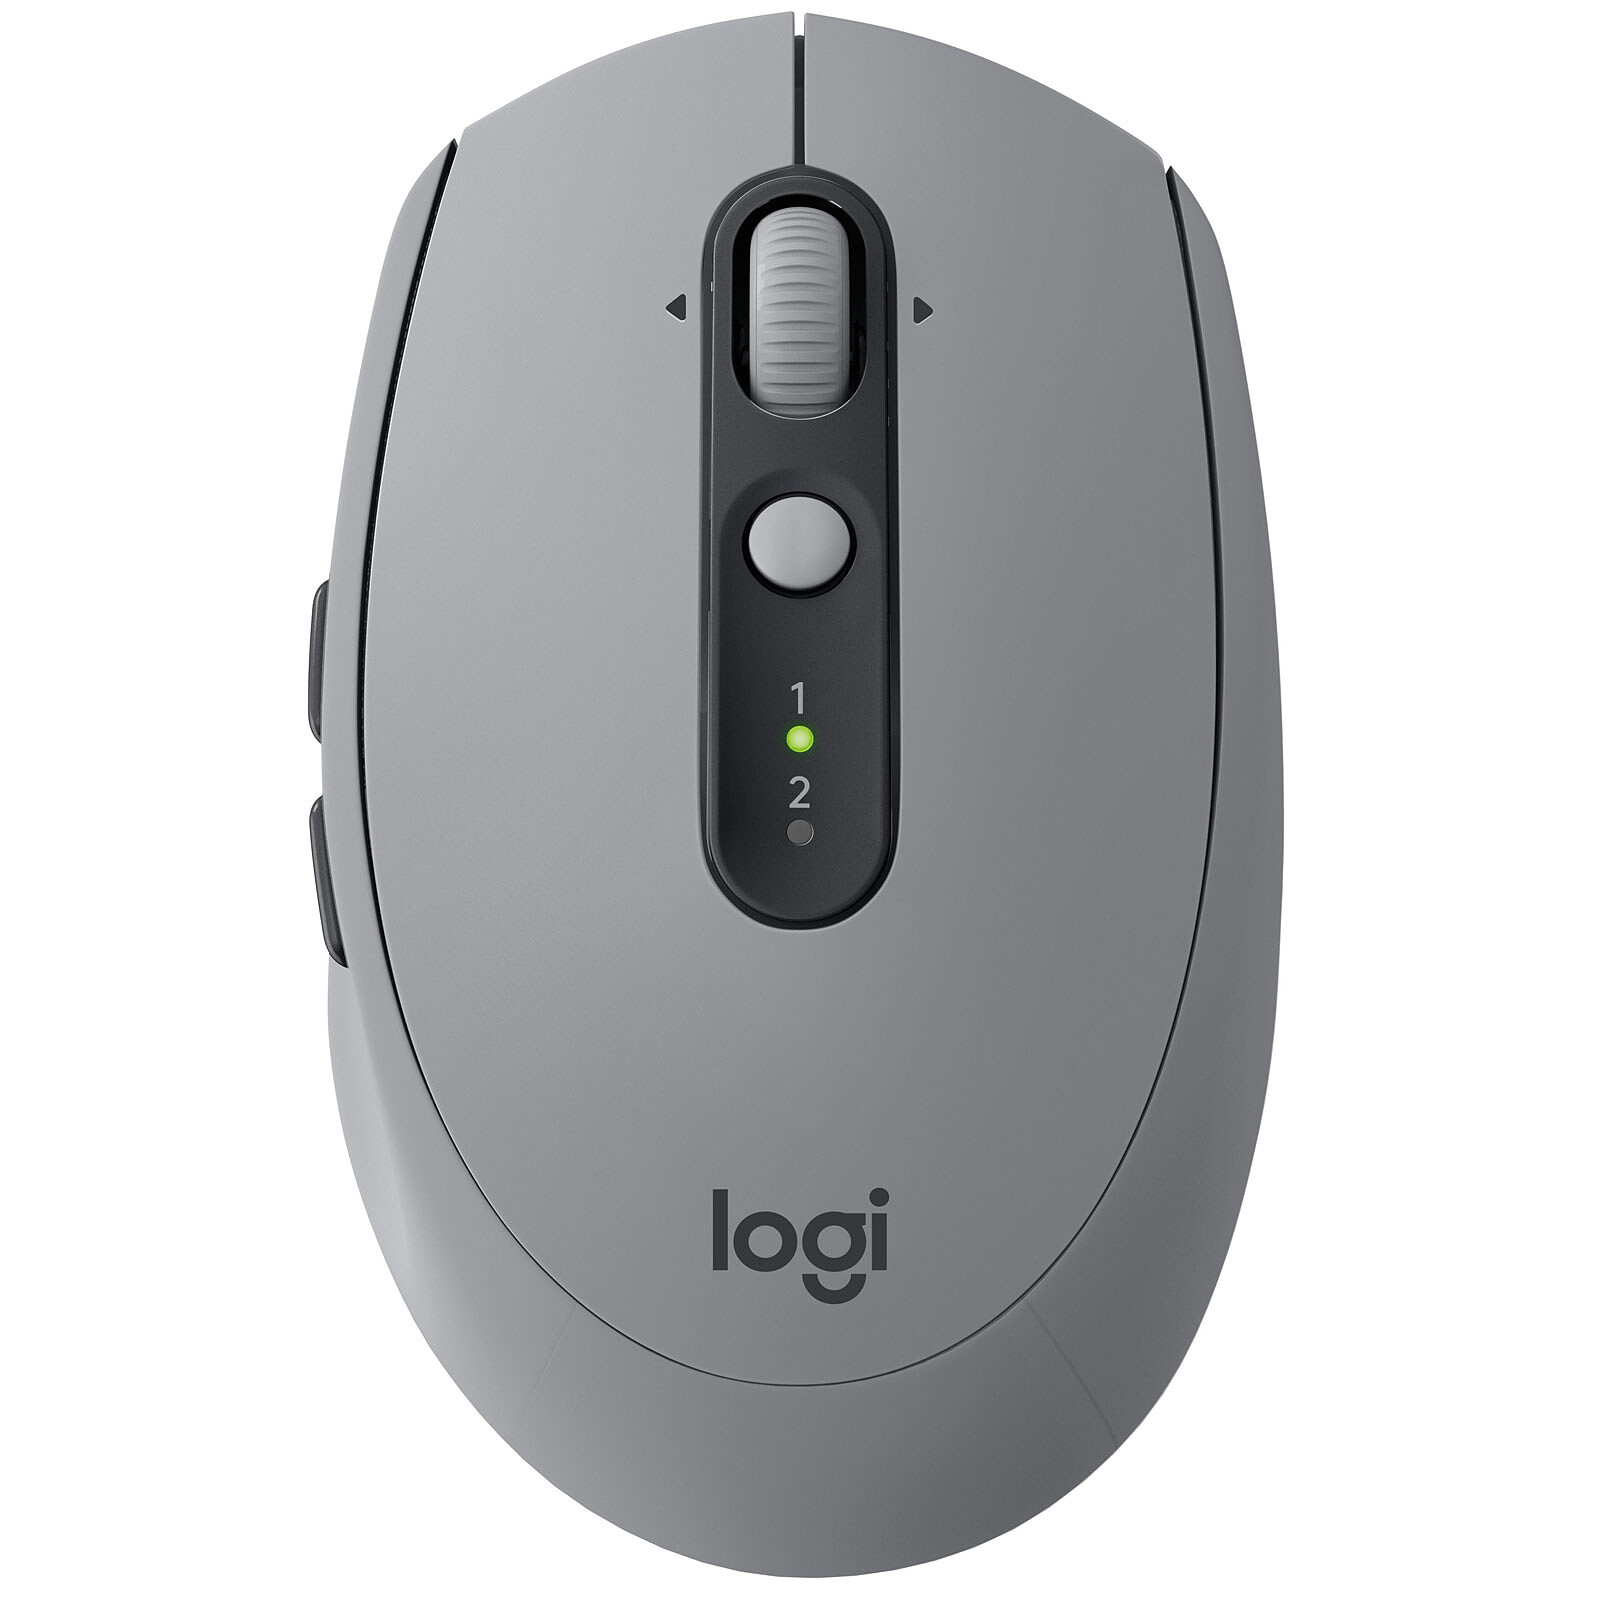 Logitech Mouse senza fili M590 multidispositivo silenzioso (grigio) - Mouse  - Garanzia 3 anni LDLC